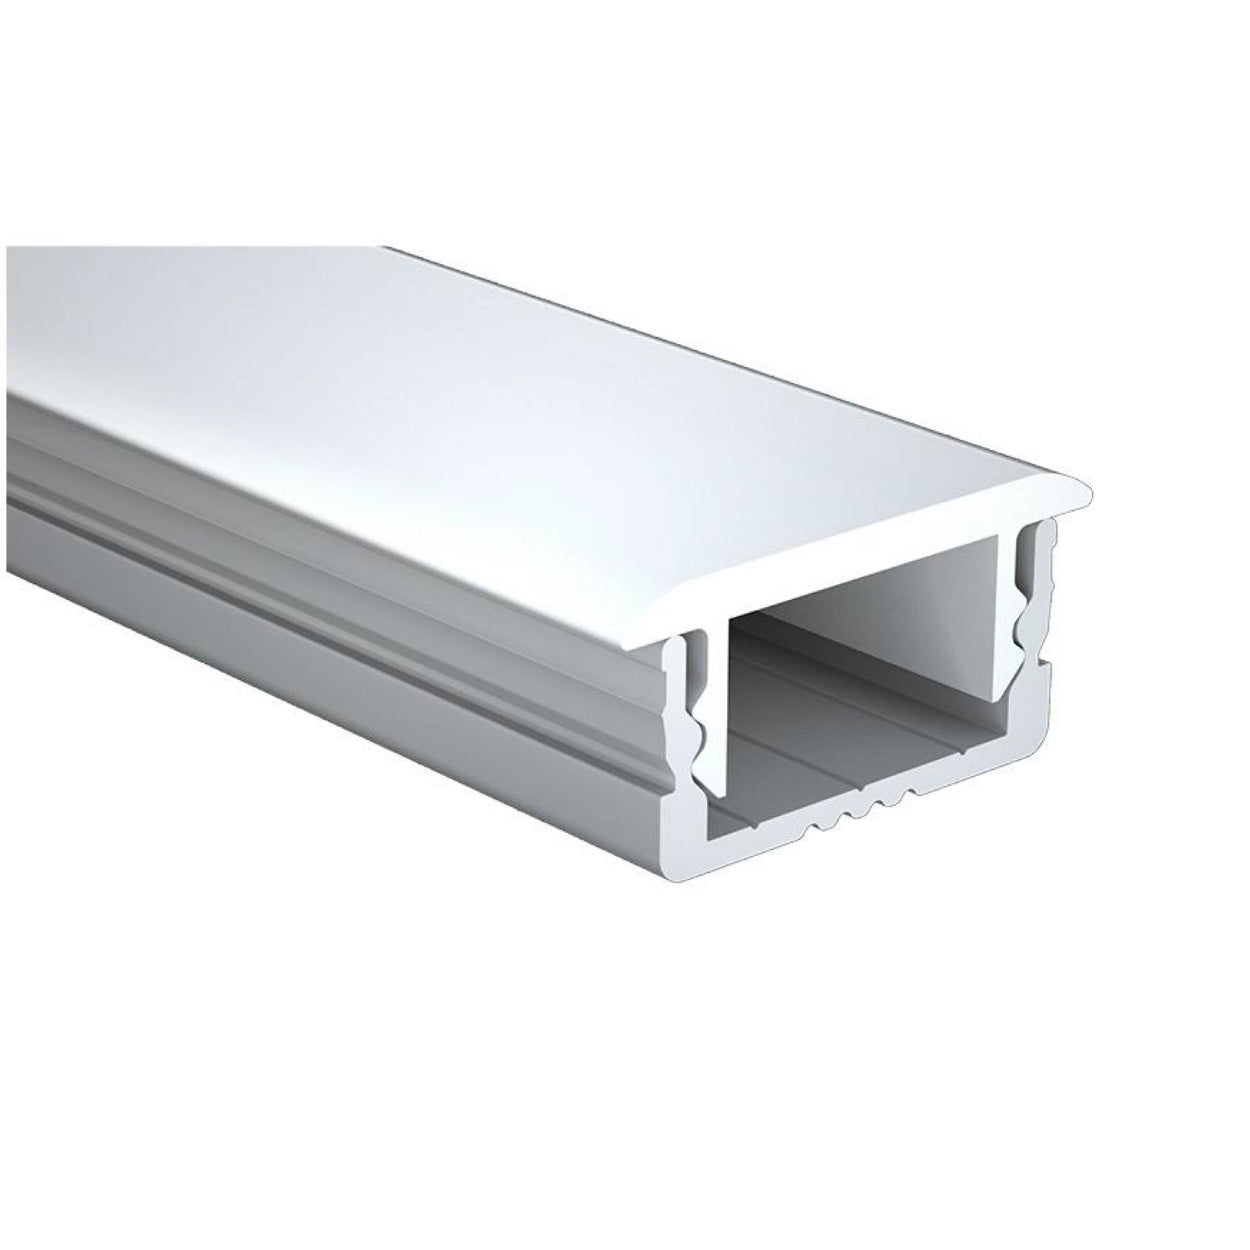 LED Aluminium Profile LumiTrack Flange 2M Kit